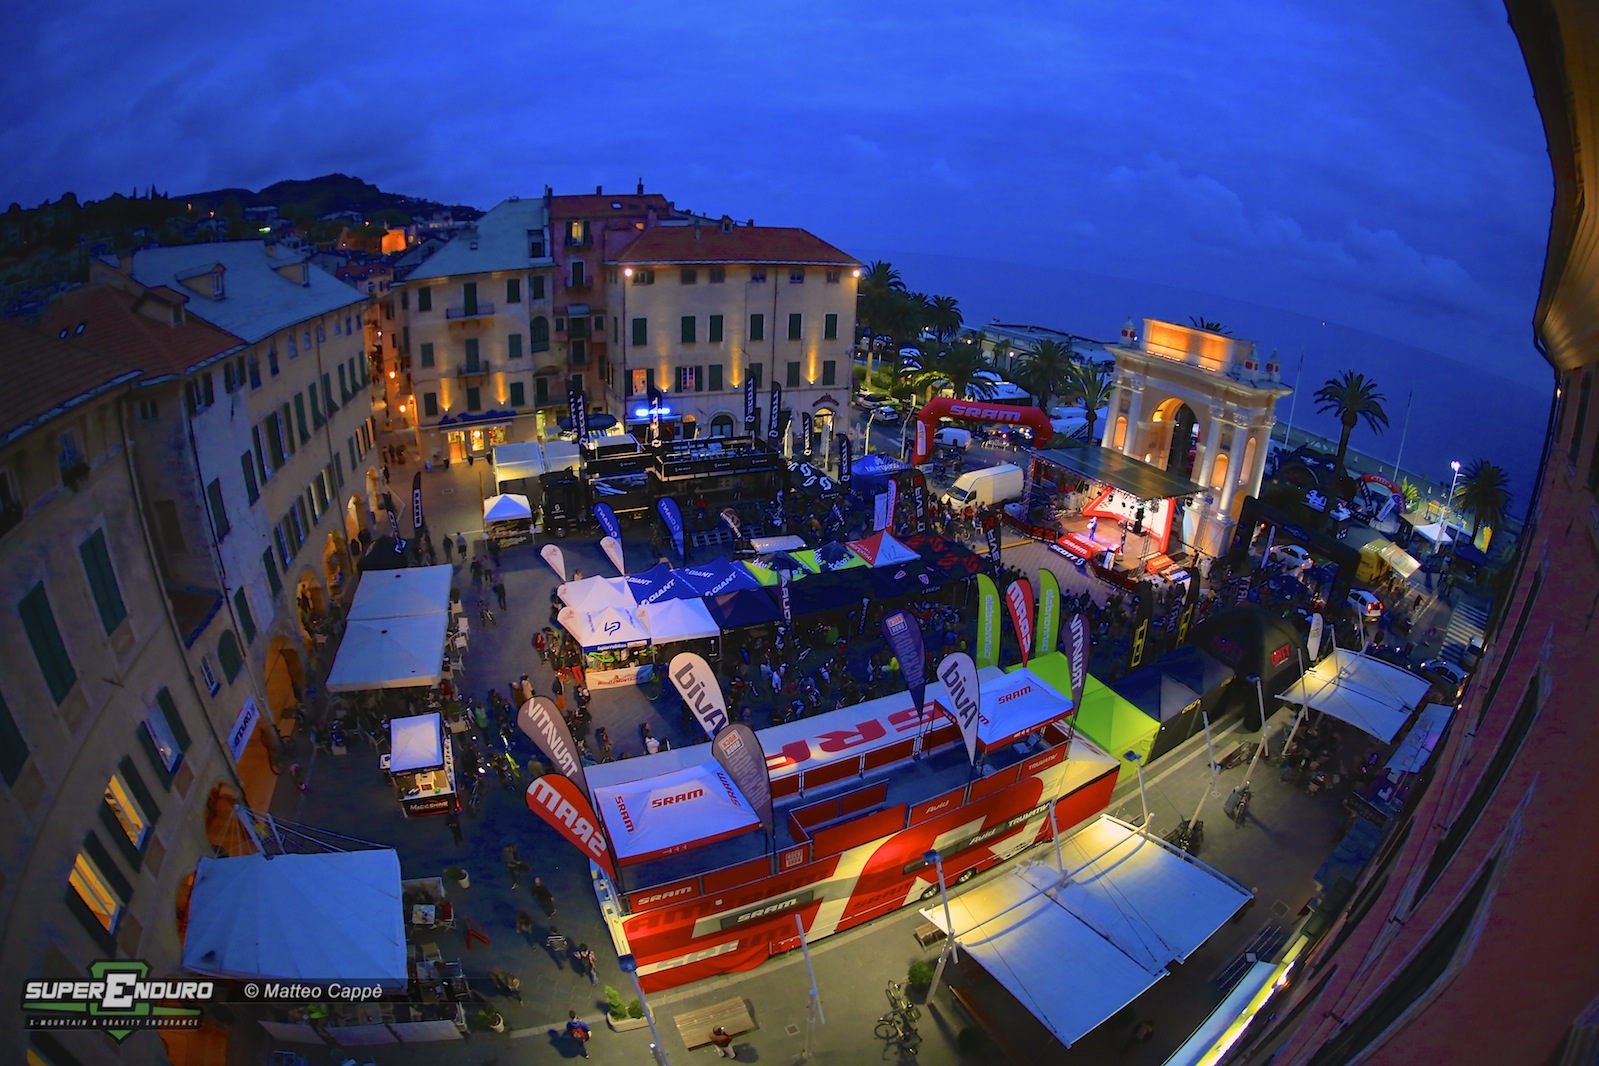 La piazza Vittorio Emanuele II si colora e si anima con i truck e gli stand di alcune delle aziende più note al mondo